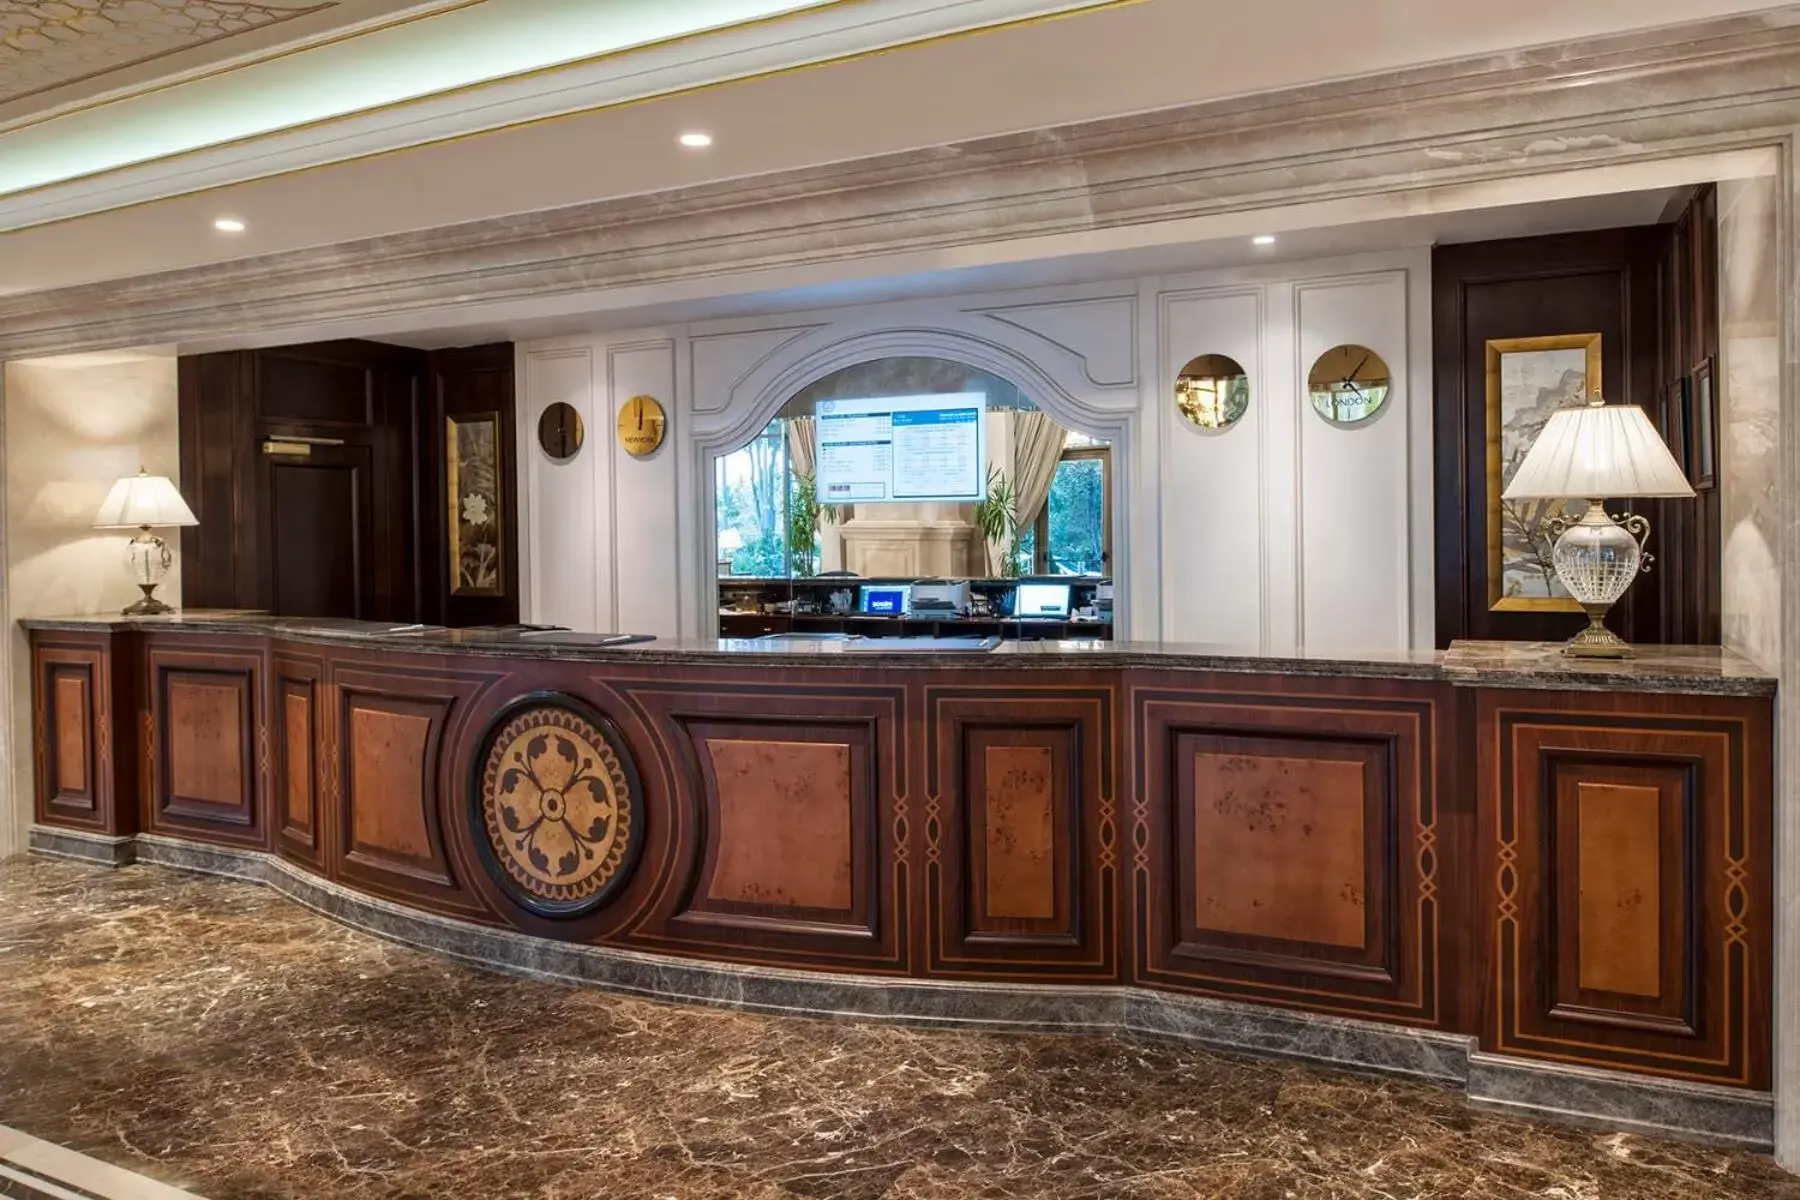 Lobby or reception, Lobby/Reception in Elite World Istanbul Florya